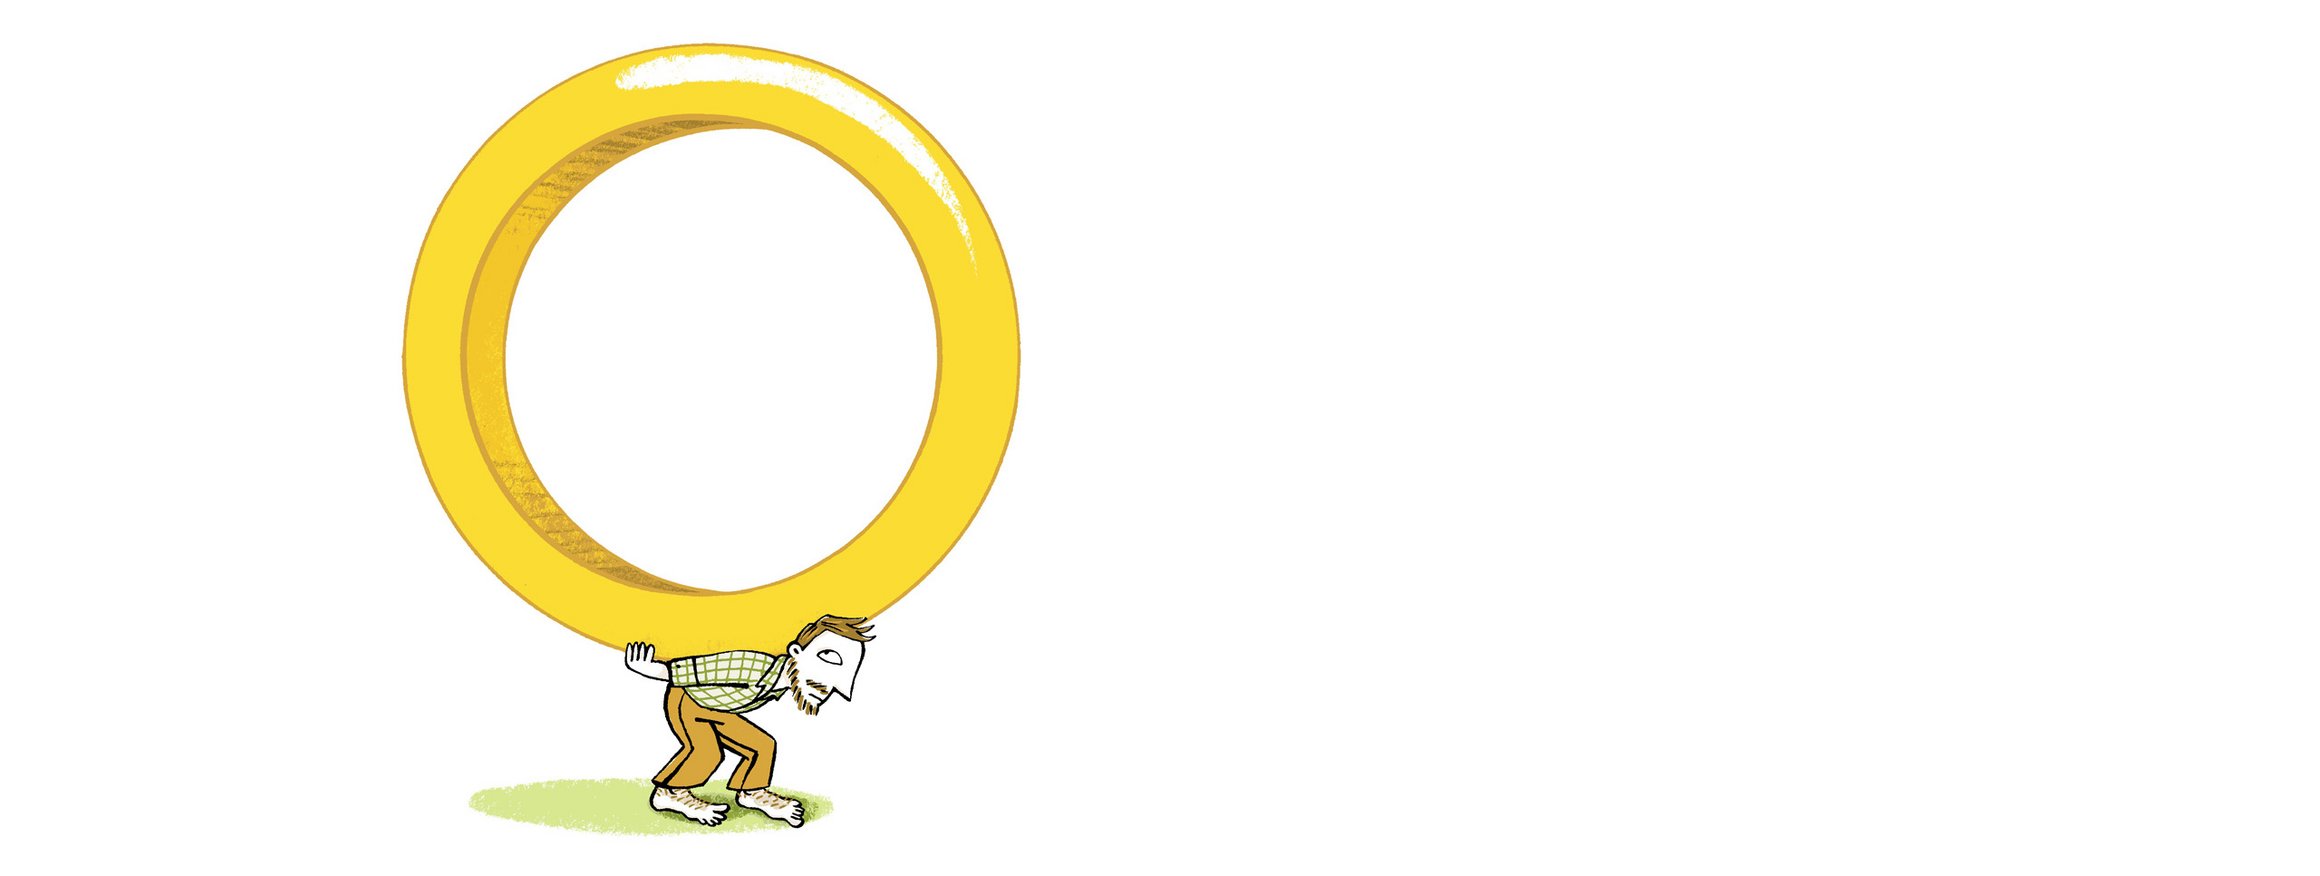 Die Illustration zeigt den Klienten eines Therapeuten, der gebeugt einen großen, goldenen Ring trägt und sich seinen sexualisierten Gewaltfantasien hilflos ausgeliefert fühlt